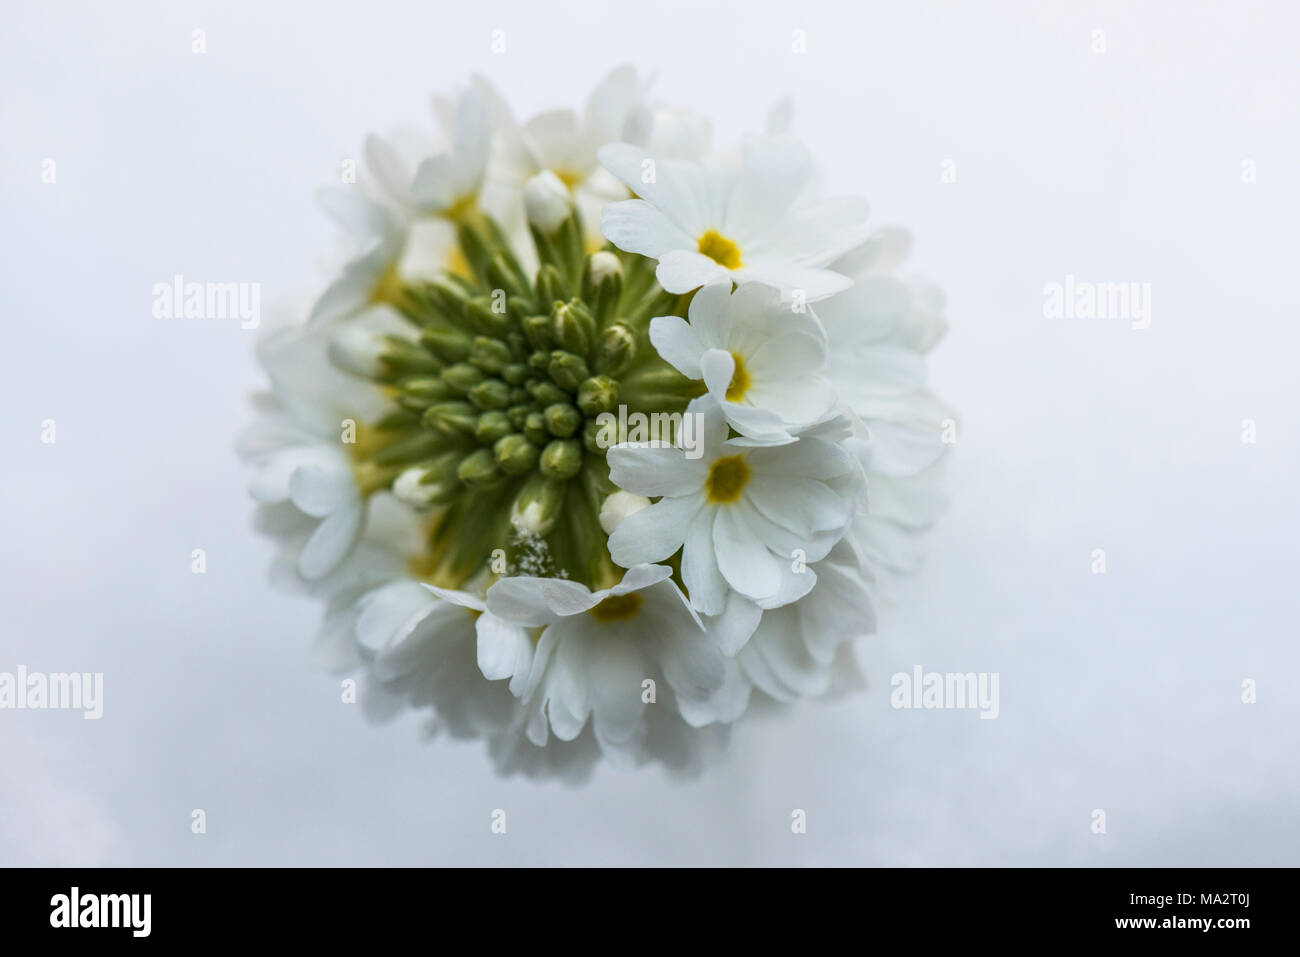 A white drumstick primrose (Primula denticulata) in the snow Stock Photo